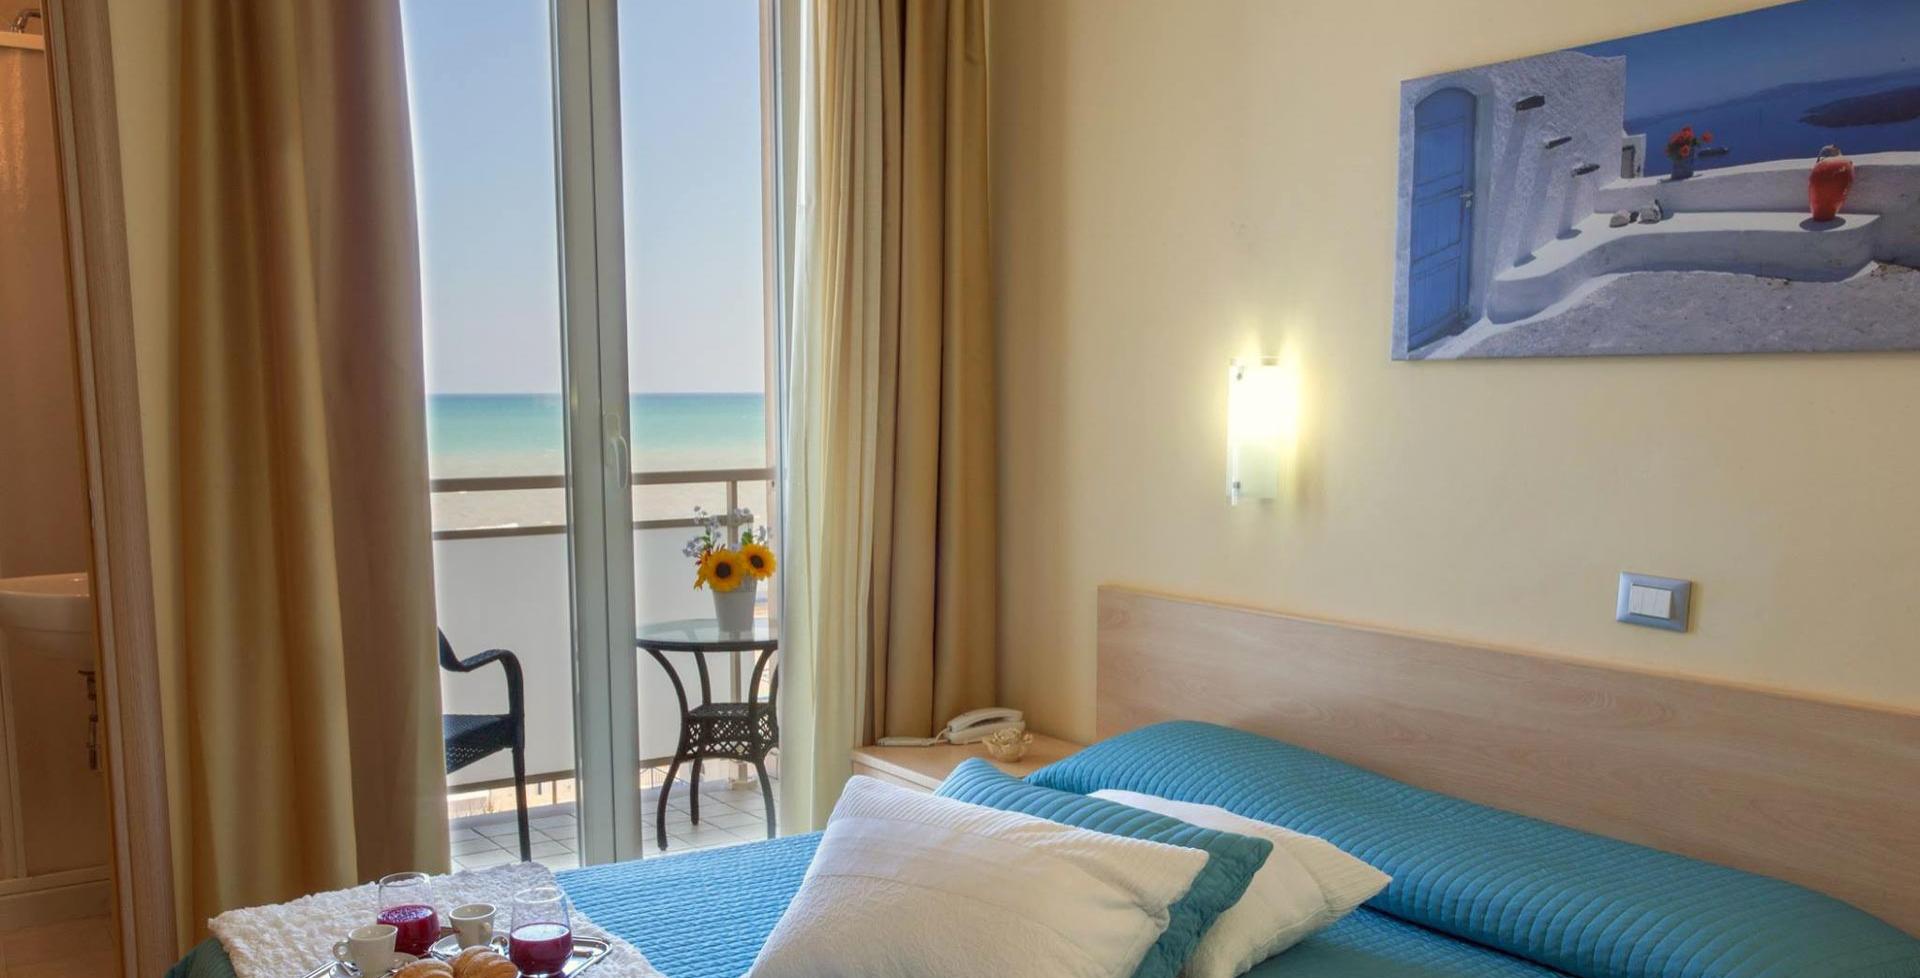 hotelcaggiari it hotel-caggiari-senigallia-beach-vacay 004